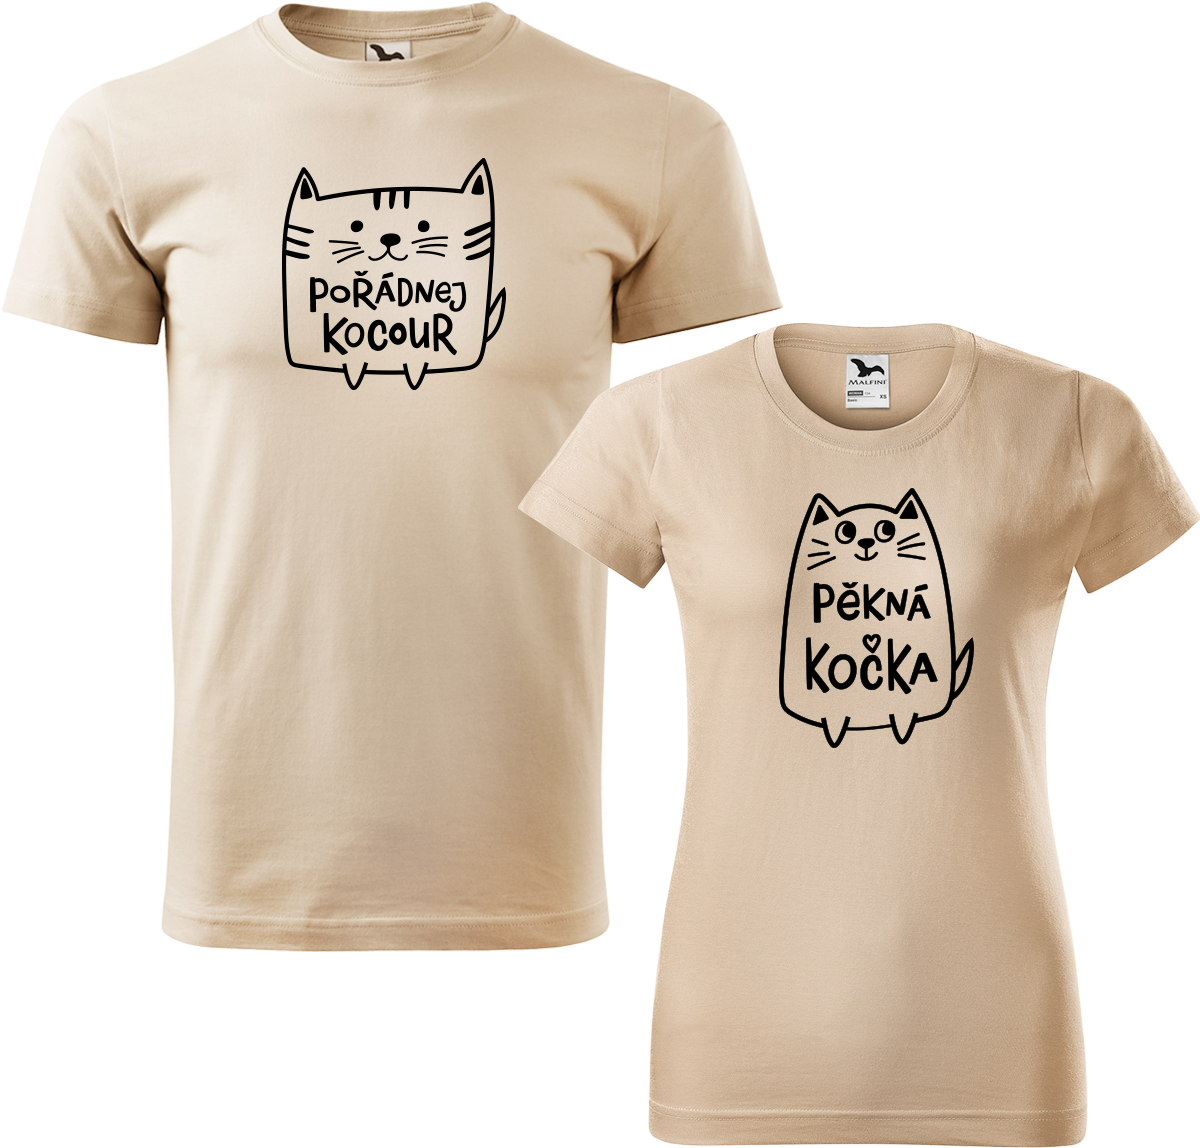 Trička pro páry - Pořádnej kocour a pěkná kočka Barva: Písková (08), Velikost dámské tričko: XL, Velikost pánské tričko: XL